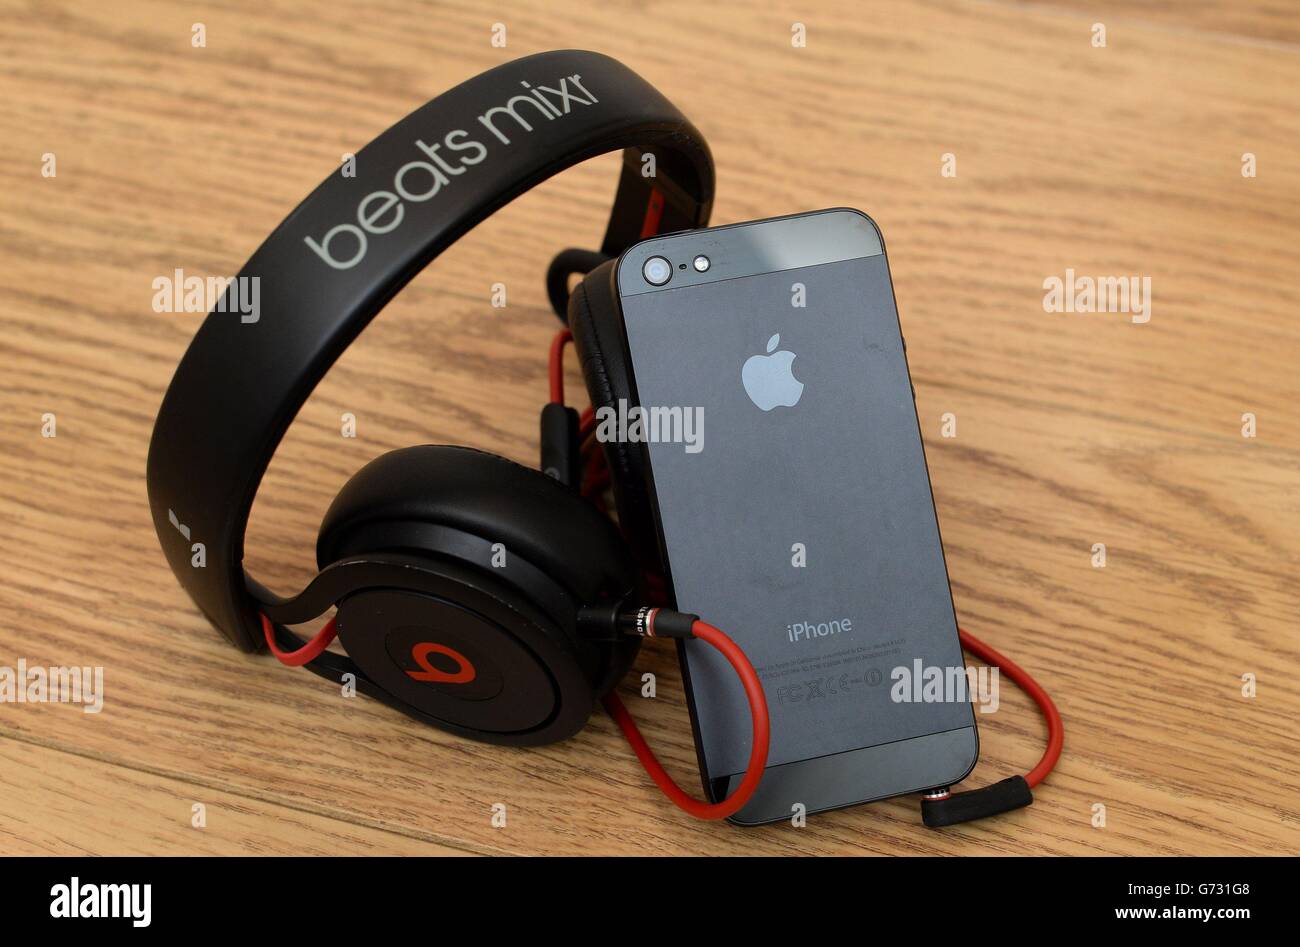 Vista generale di un paio di cuffie Beats Mixr insieme a un Apple iPhone 5,  come Apple farà l'acquisizione più costosa nella sua storia, dopo aver  confermato un accordo per acquistare Dr